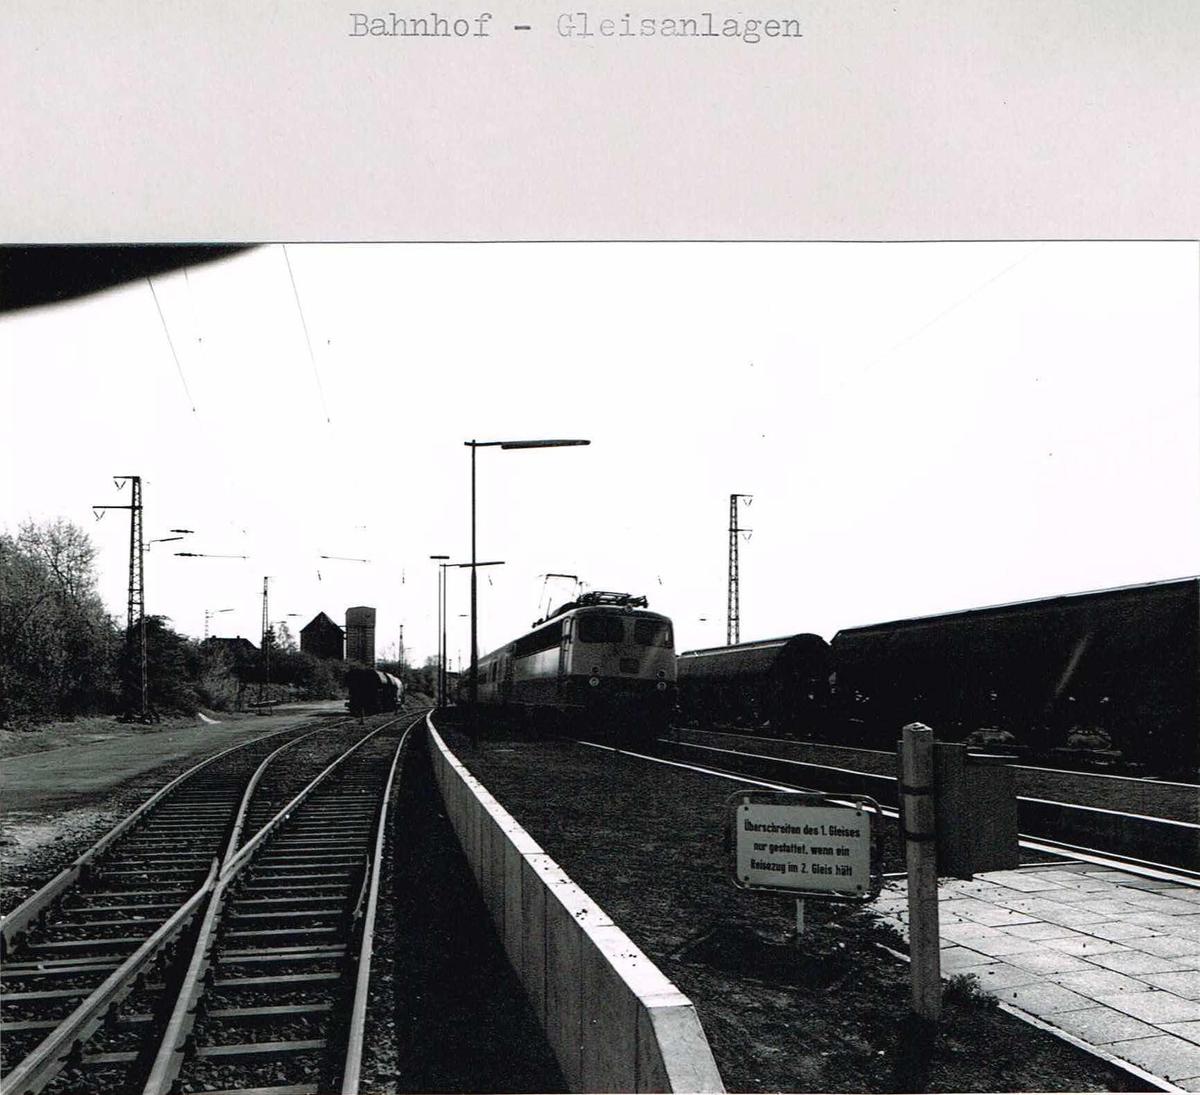 Bahnhof Gleisanlagen 01